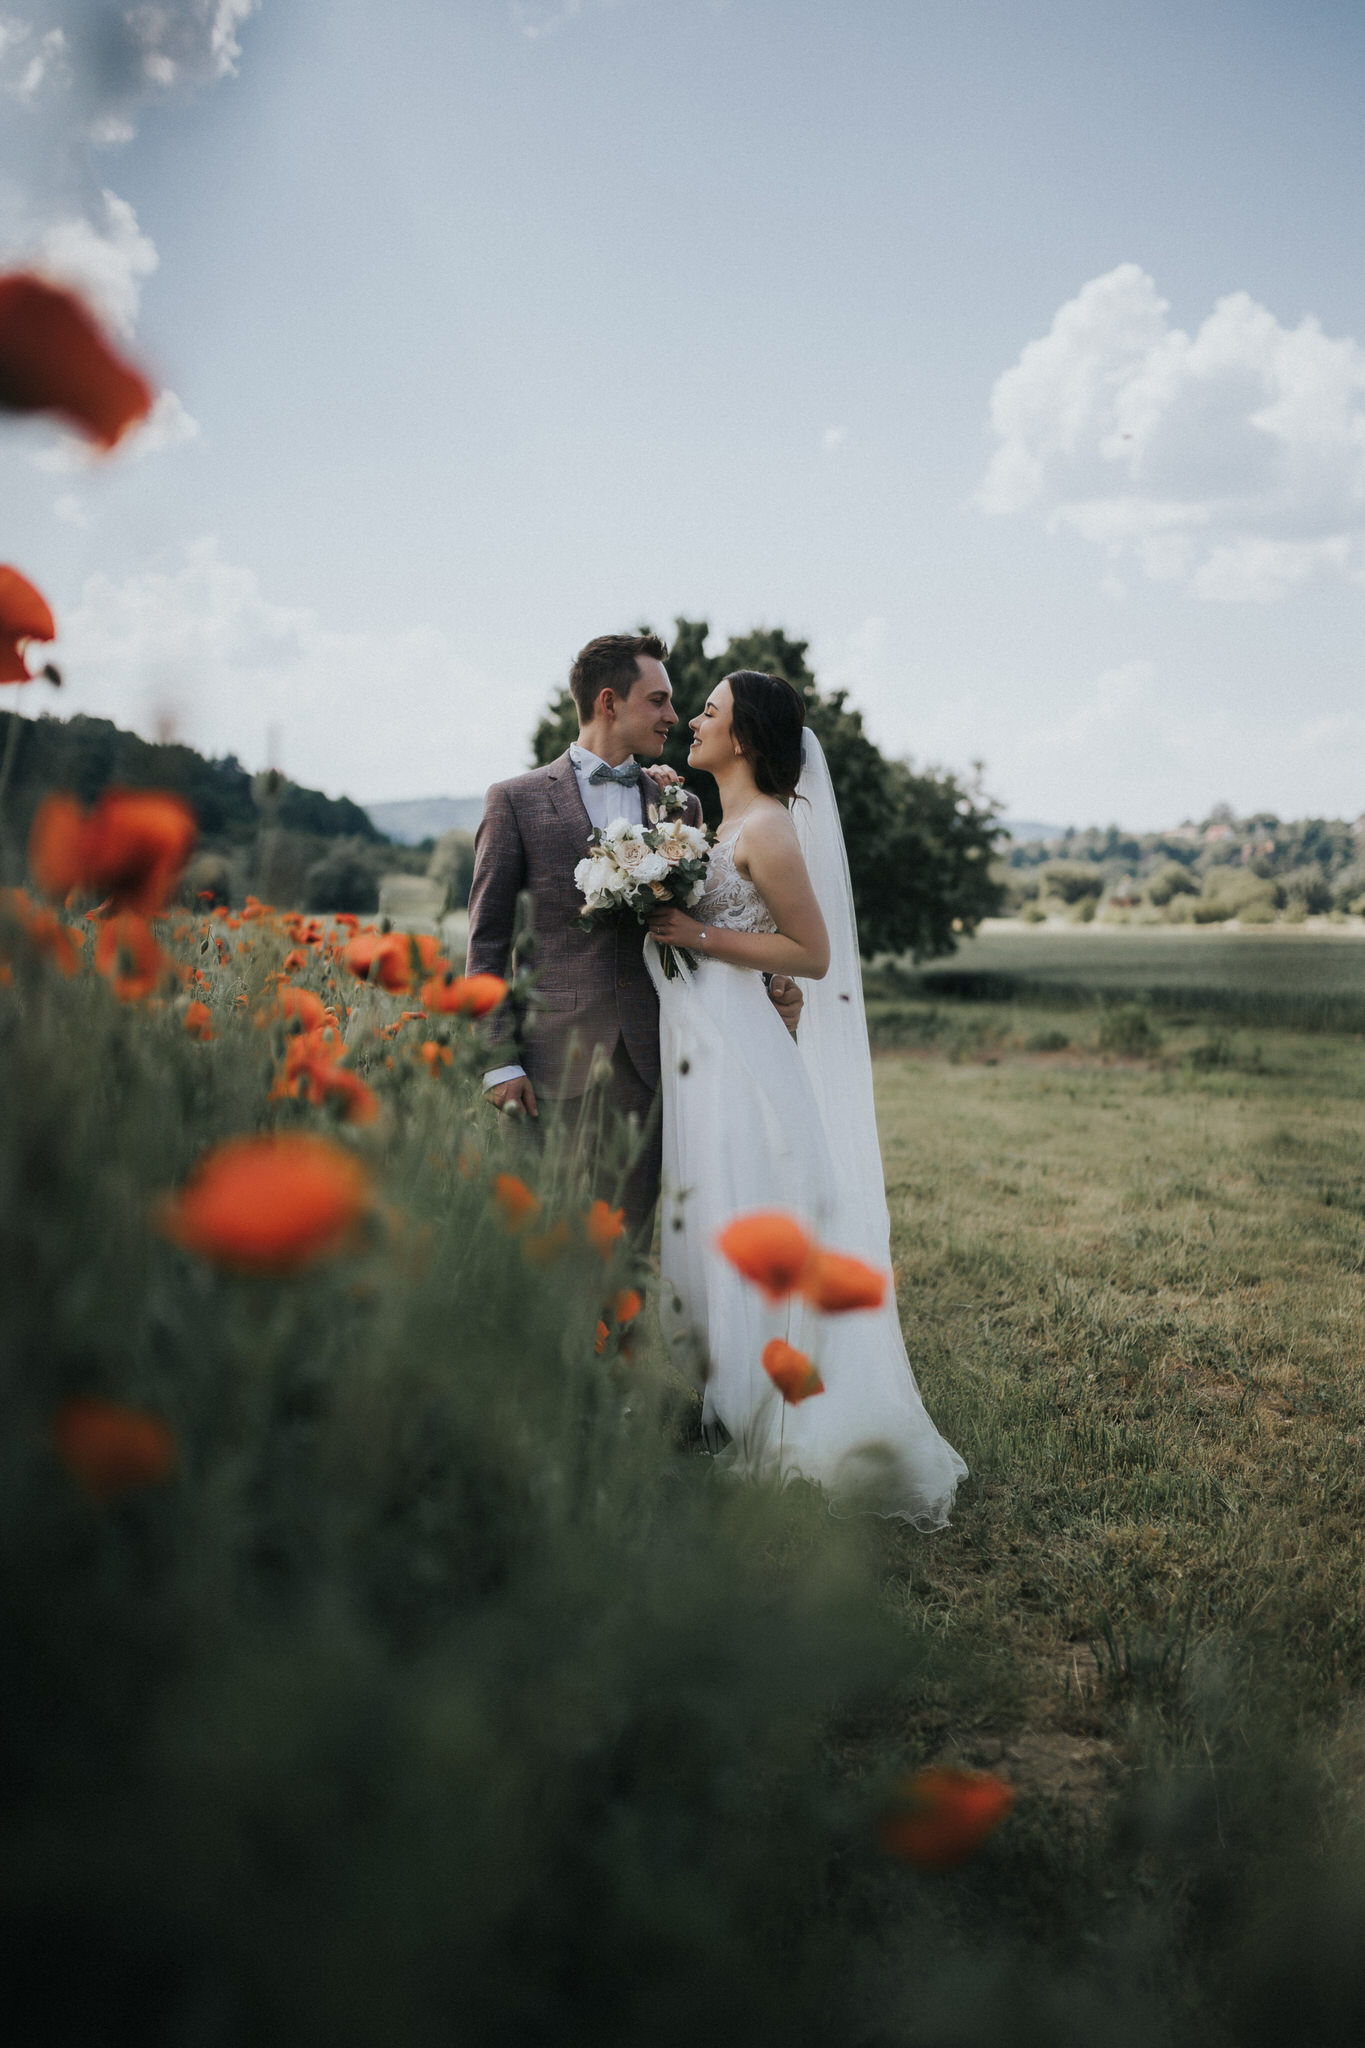 Romantisches Brautpaarfotoshooting in der Natur von Witzenhausen – Das frisch vermählte Paar teilt intime Momente der Zweisamkeit, umgeben von der natürlichen Schönheit und Ruhe dieses idyllischen Ortes.